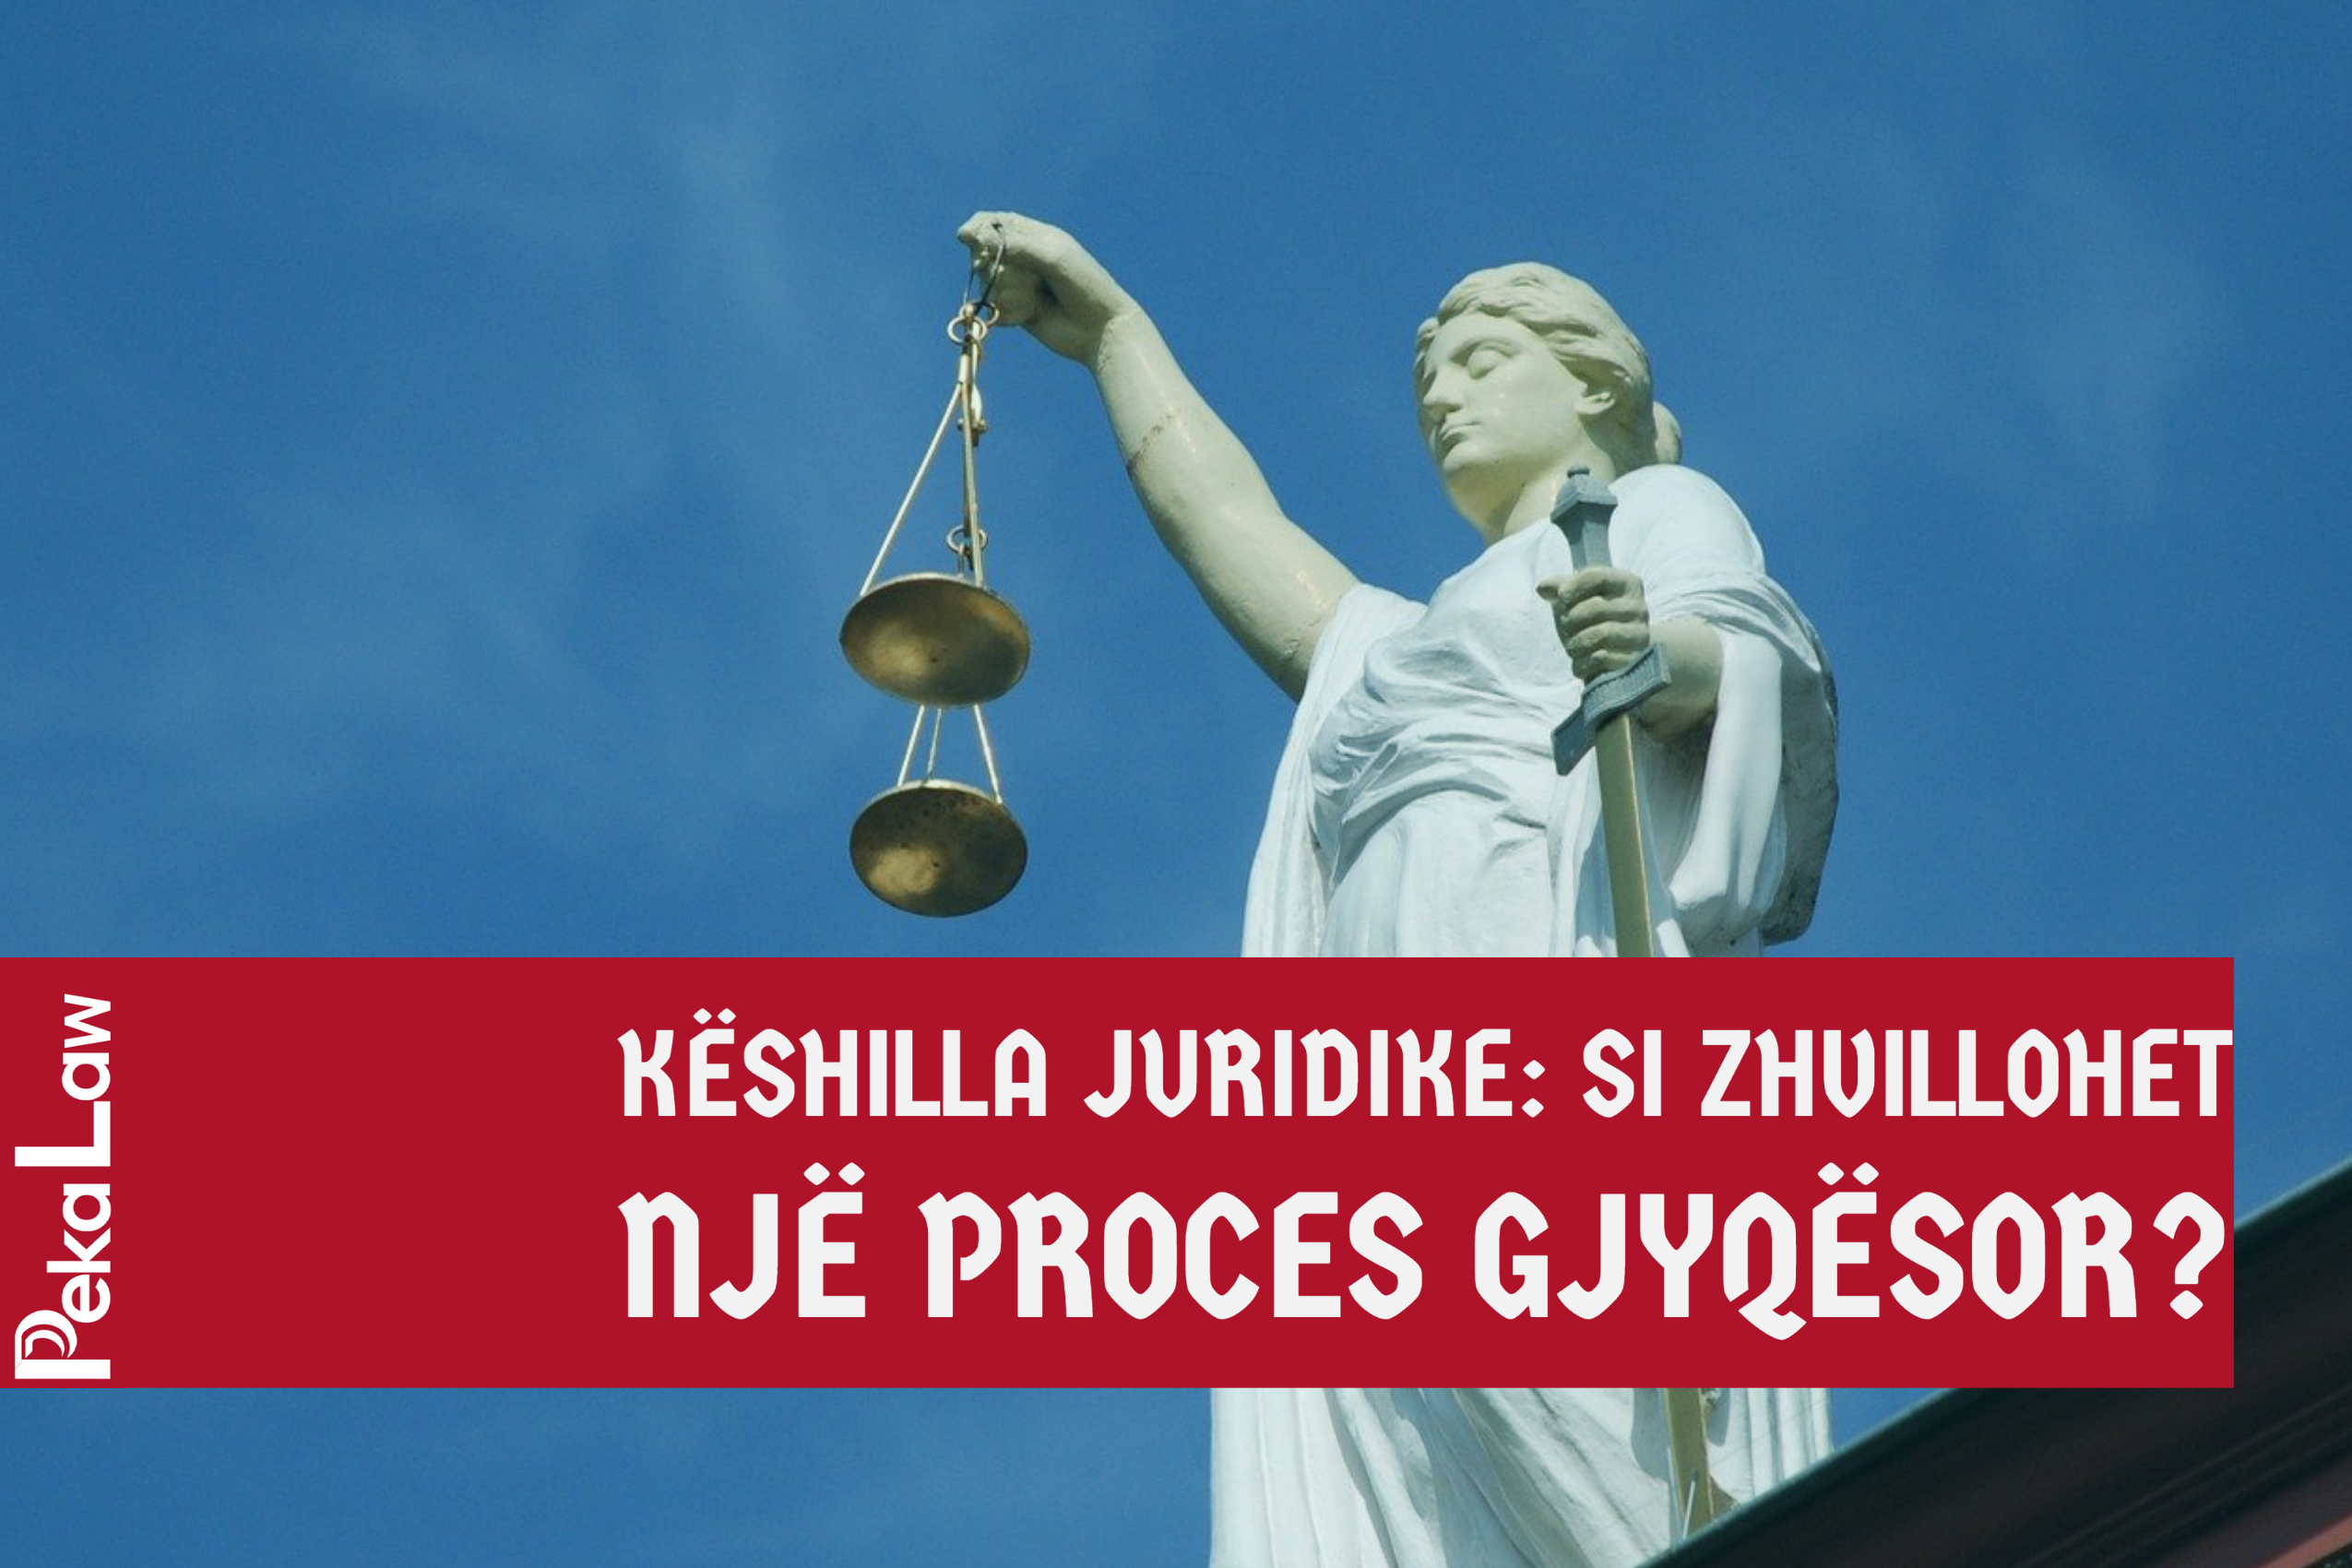 Këshilla Juridike: Si zhvillohet një proces gjyqësor?